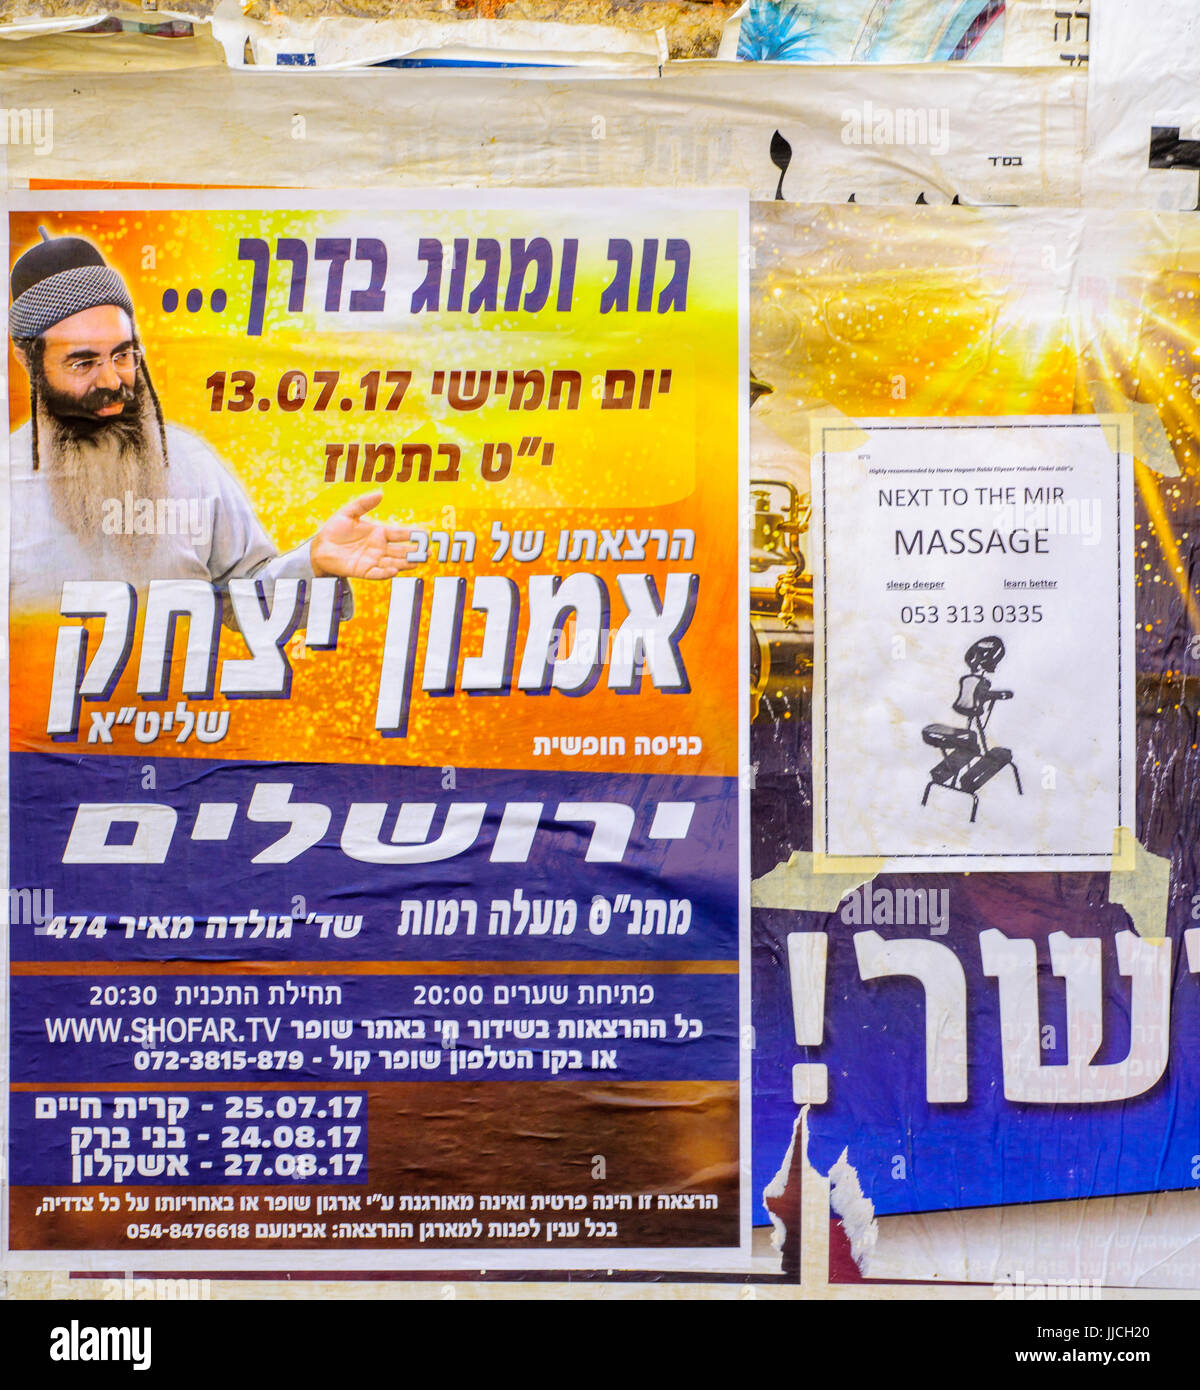 Gerusalemme, Israele - Luglio 12, 2017: combinazione di poster sui religiosi di predicazione e massaggi, in ultra-quartiere ortodosso di Mea Shearim, ger Foto Stock